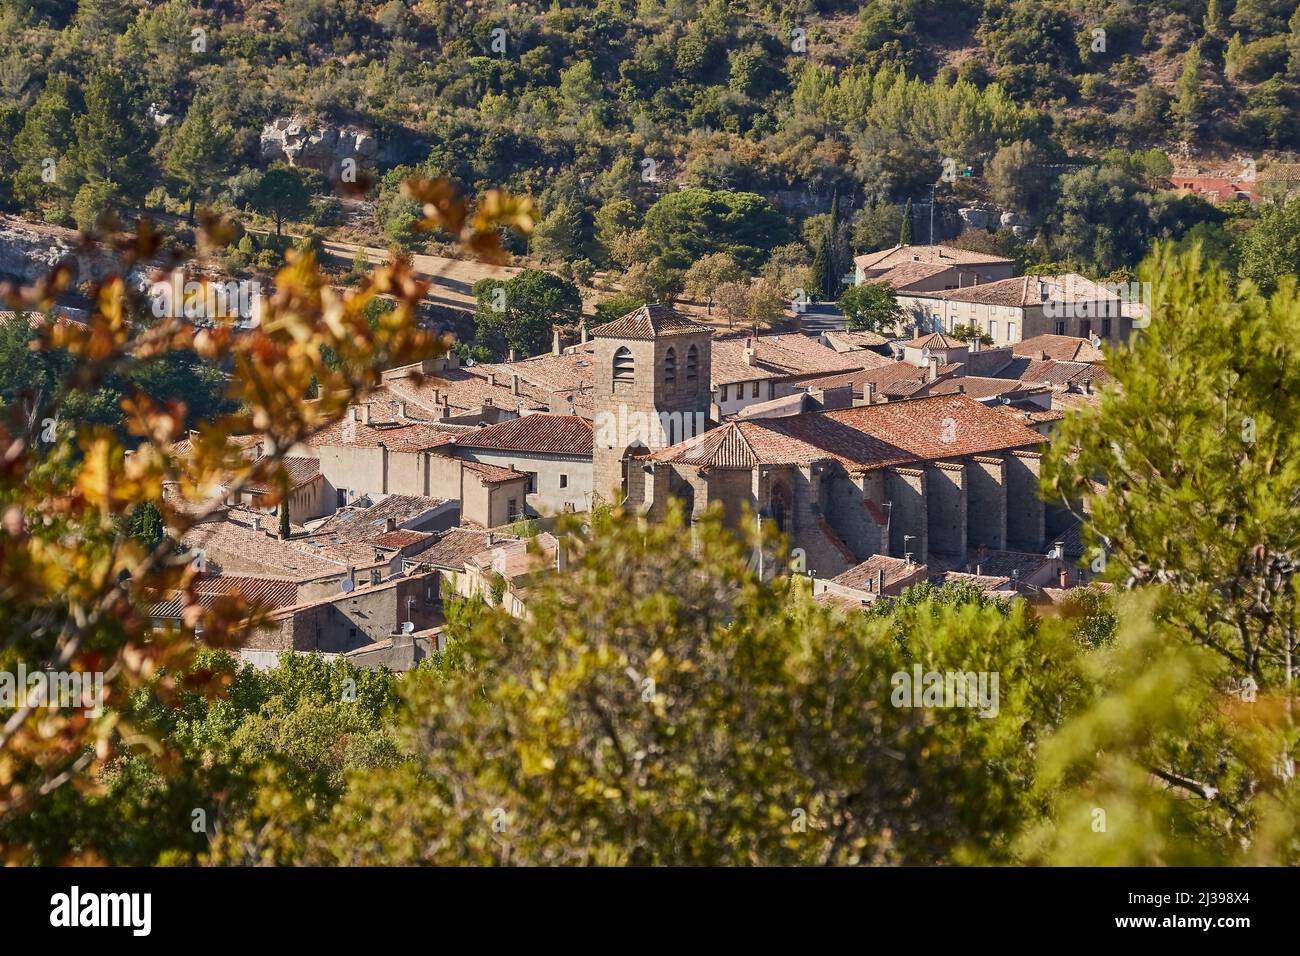 Lagrasse è un comune della Francia meridionale, situato nel dipartimento dell'Aude. Lagrasse fa parte dell'associazione Les Plus Beaux Villages de France. Foto Stock